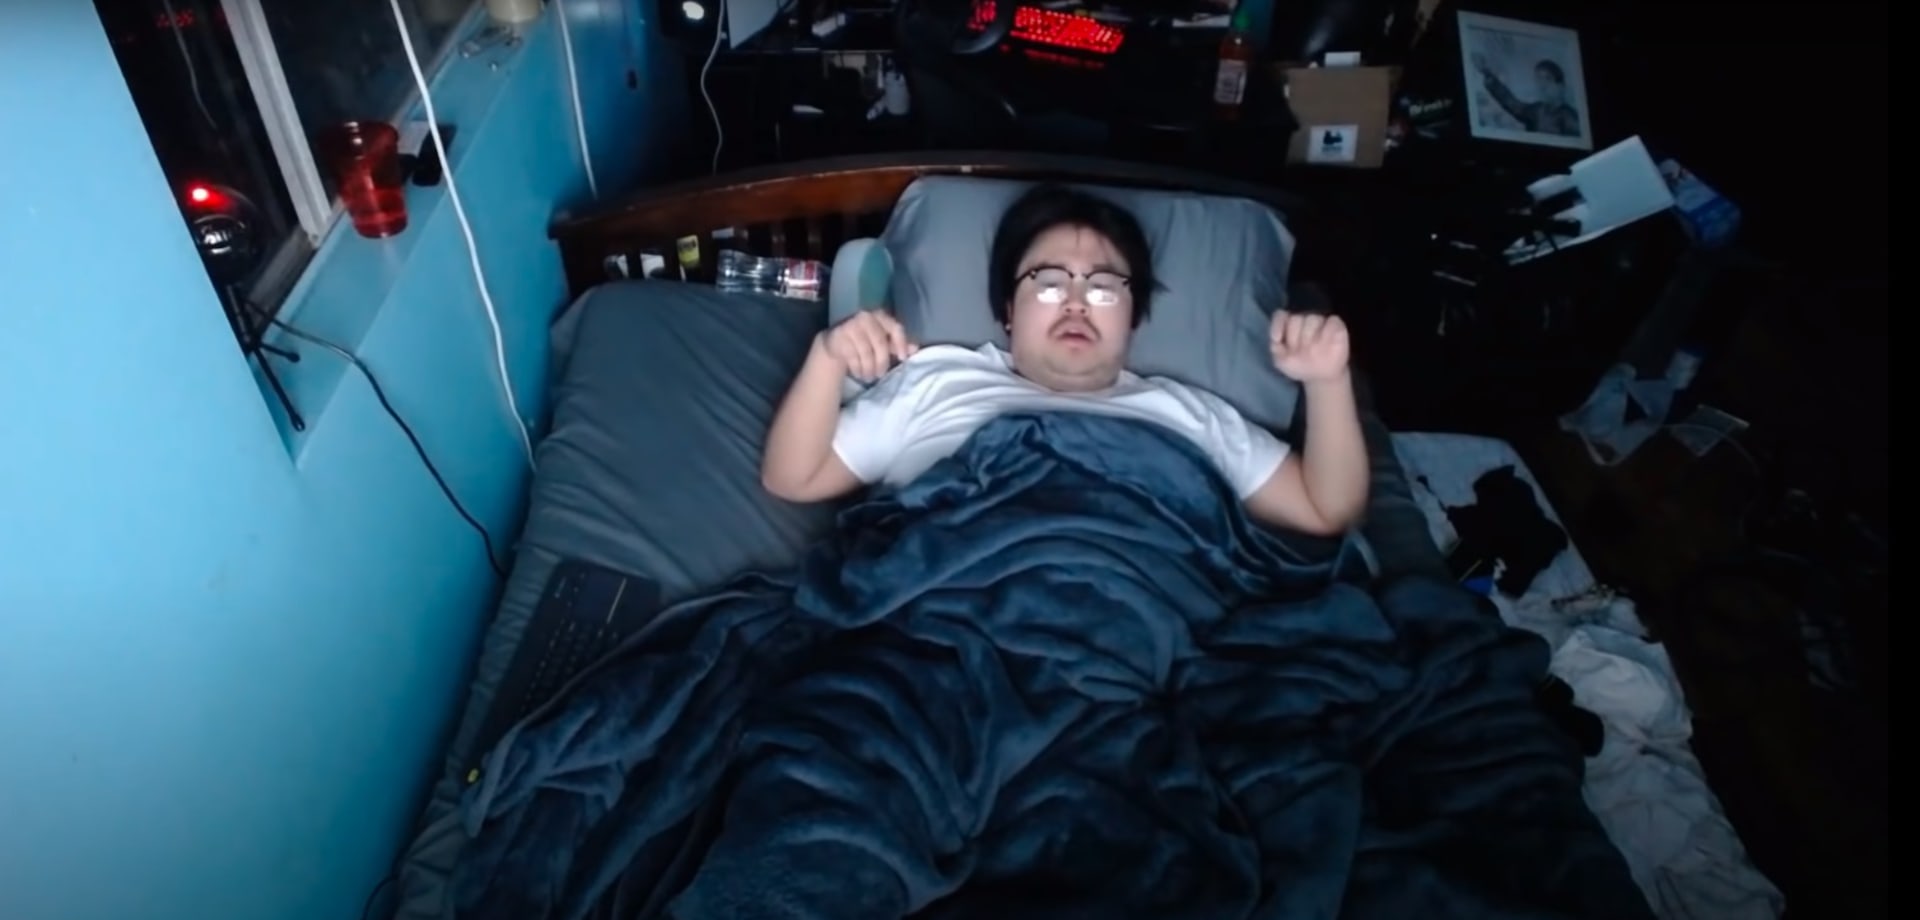 Streamer a youtuber Asian Andy během noci, kdy vydělal šestnáct tisíc dolarů díky spánku.